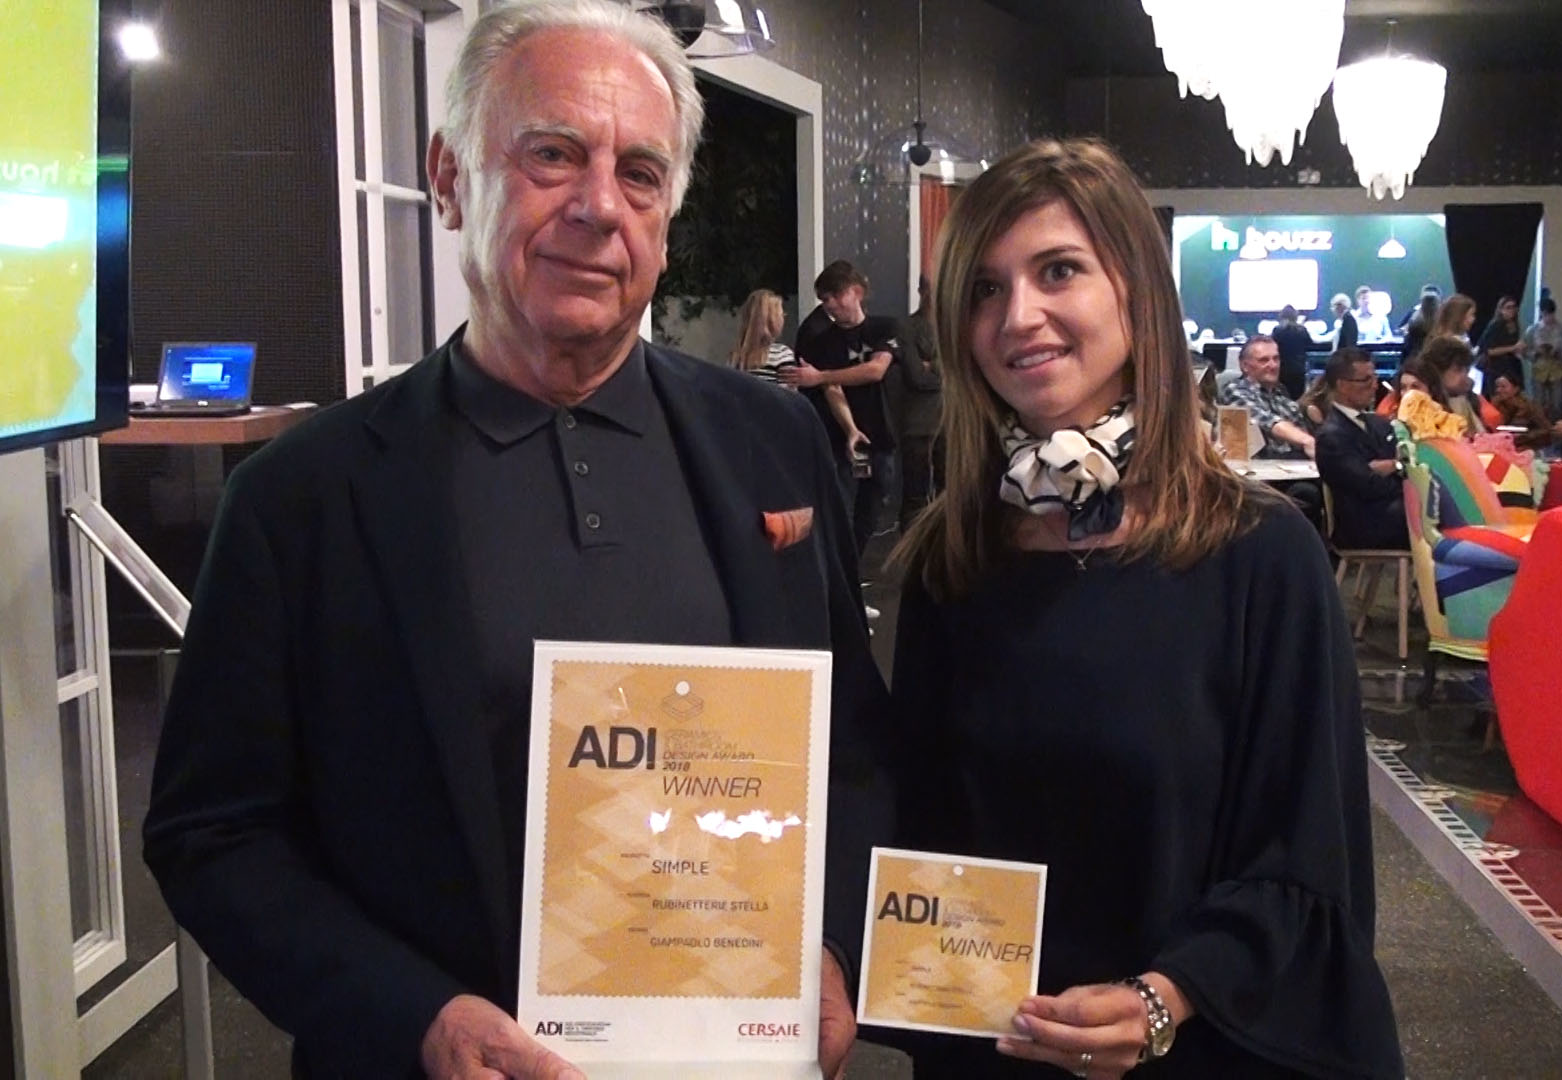 ADI Ceramics & Bathroom Design Award 2018.  Un importante riconoscimento a Rubinetterie Stella